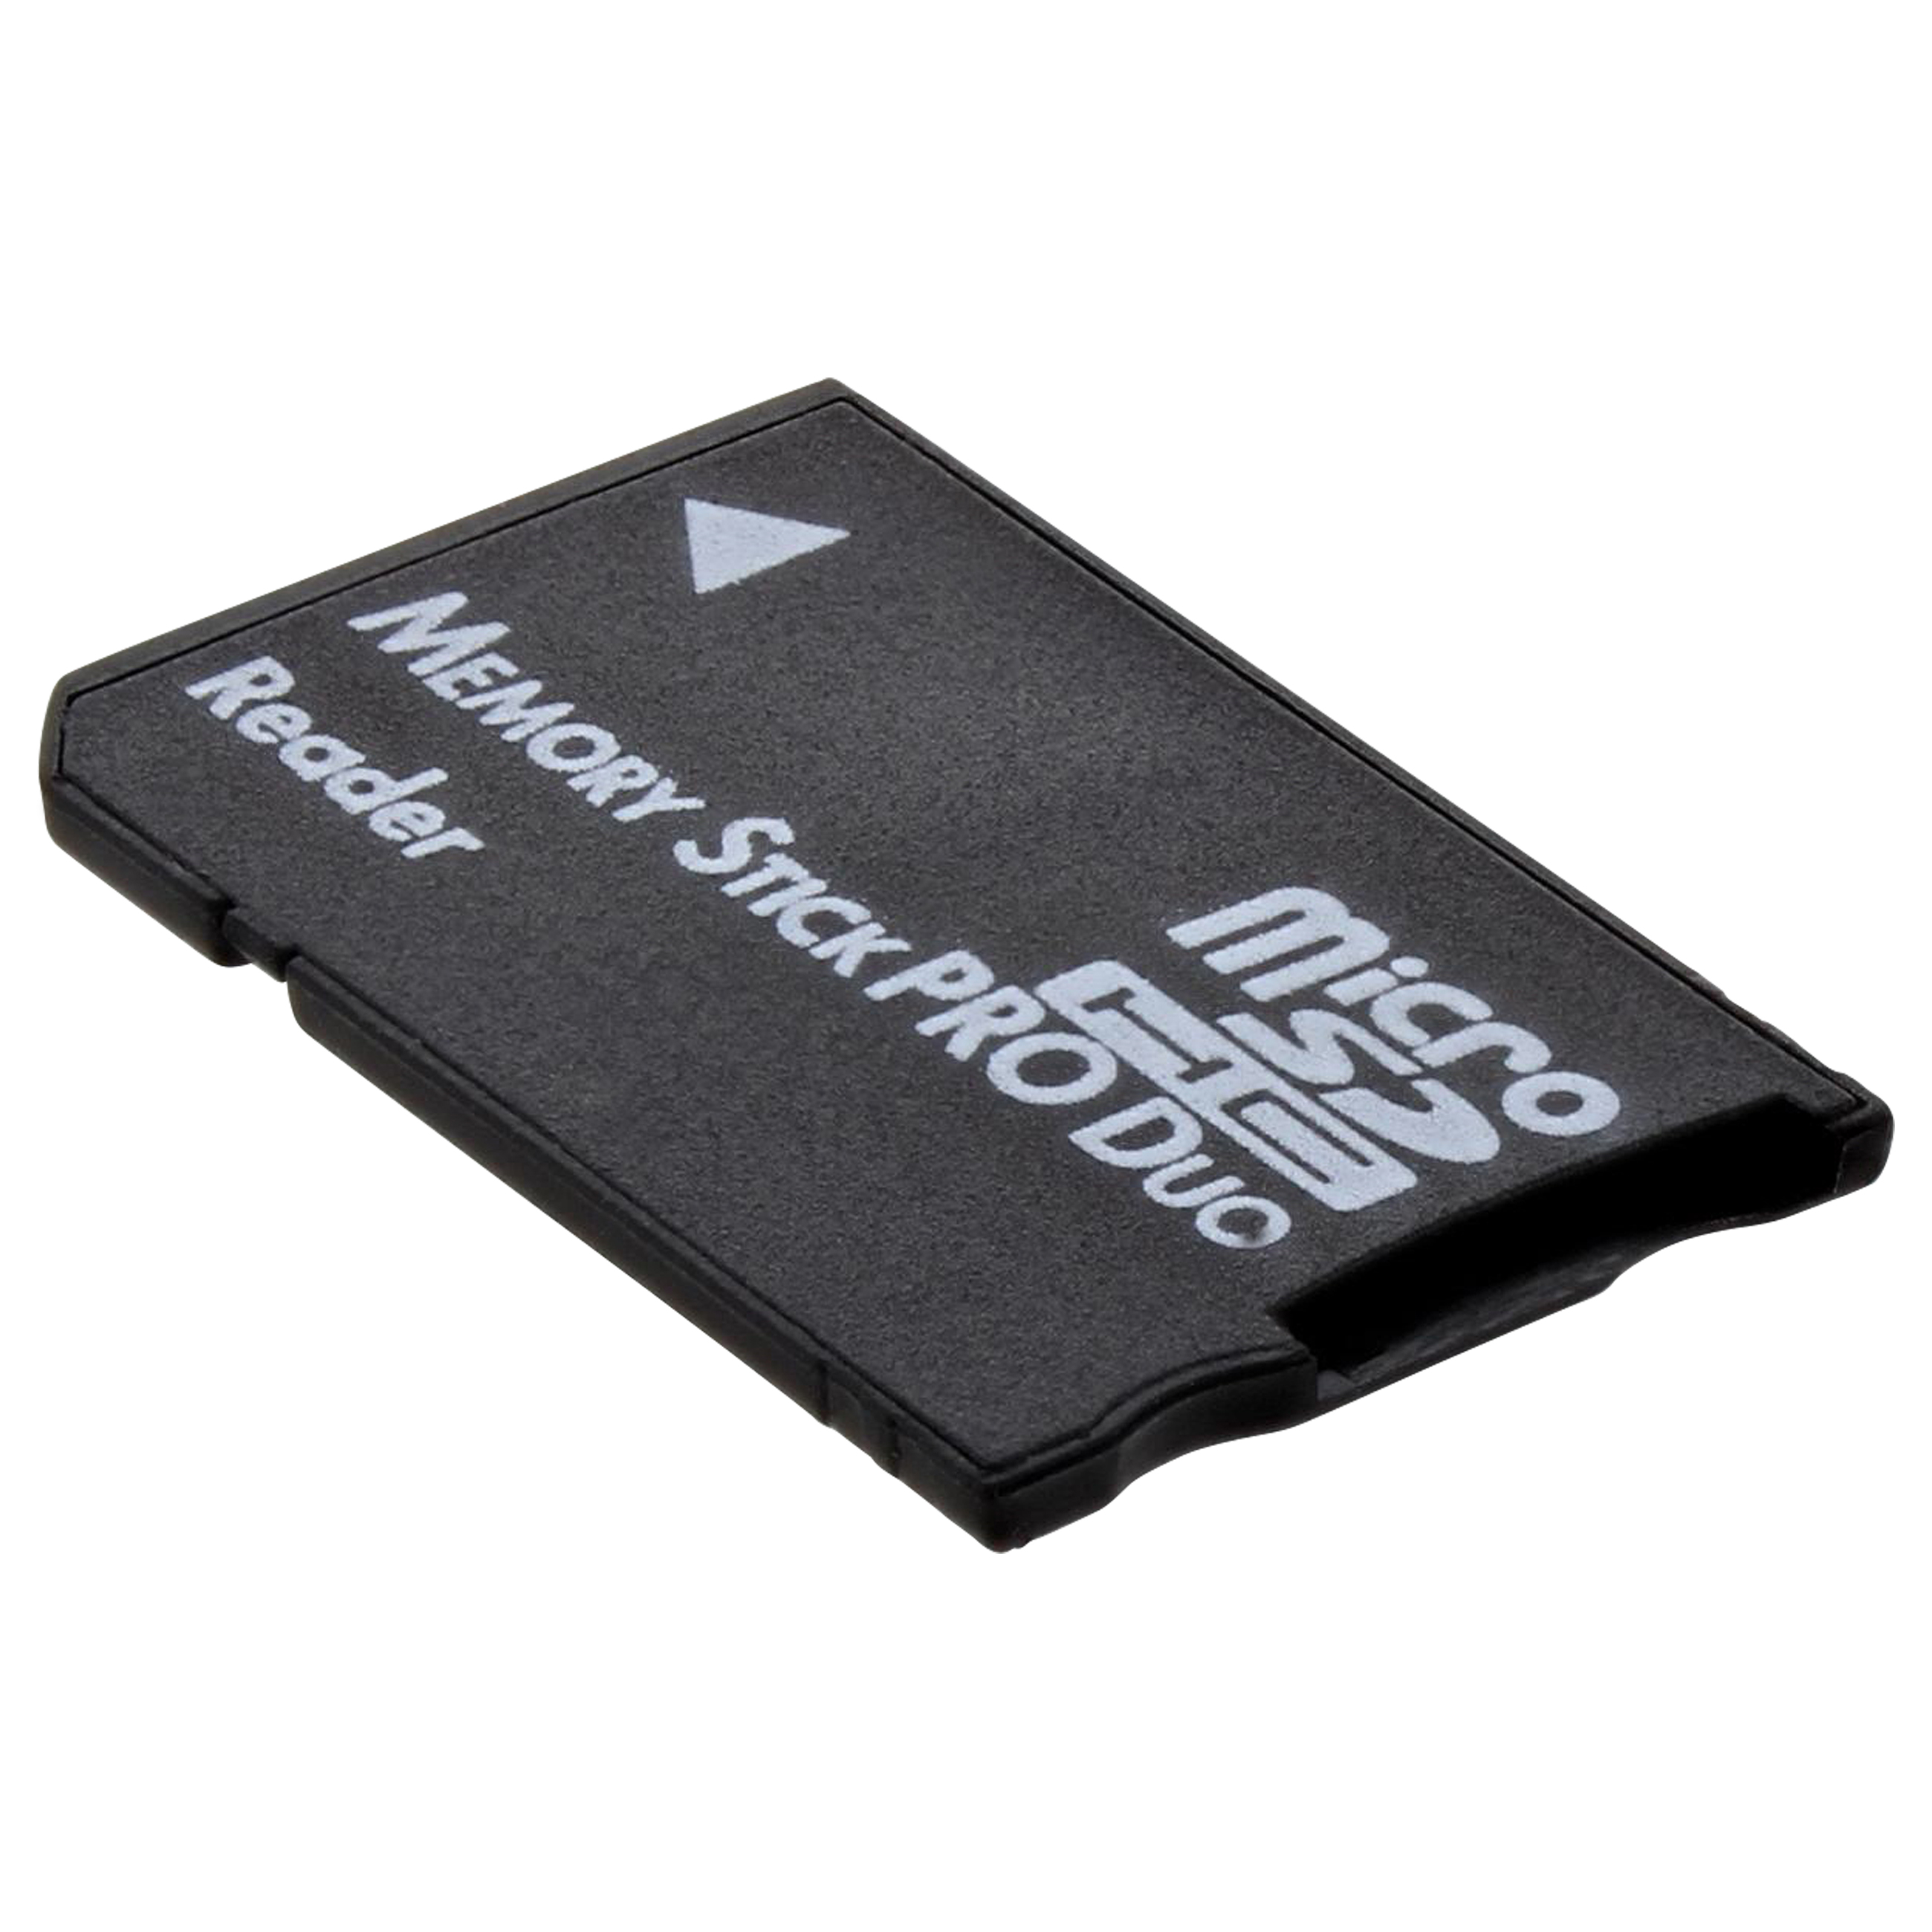 xavc s format sd micro card